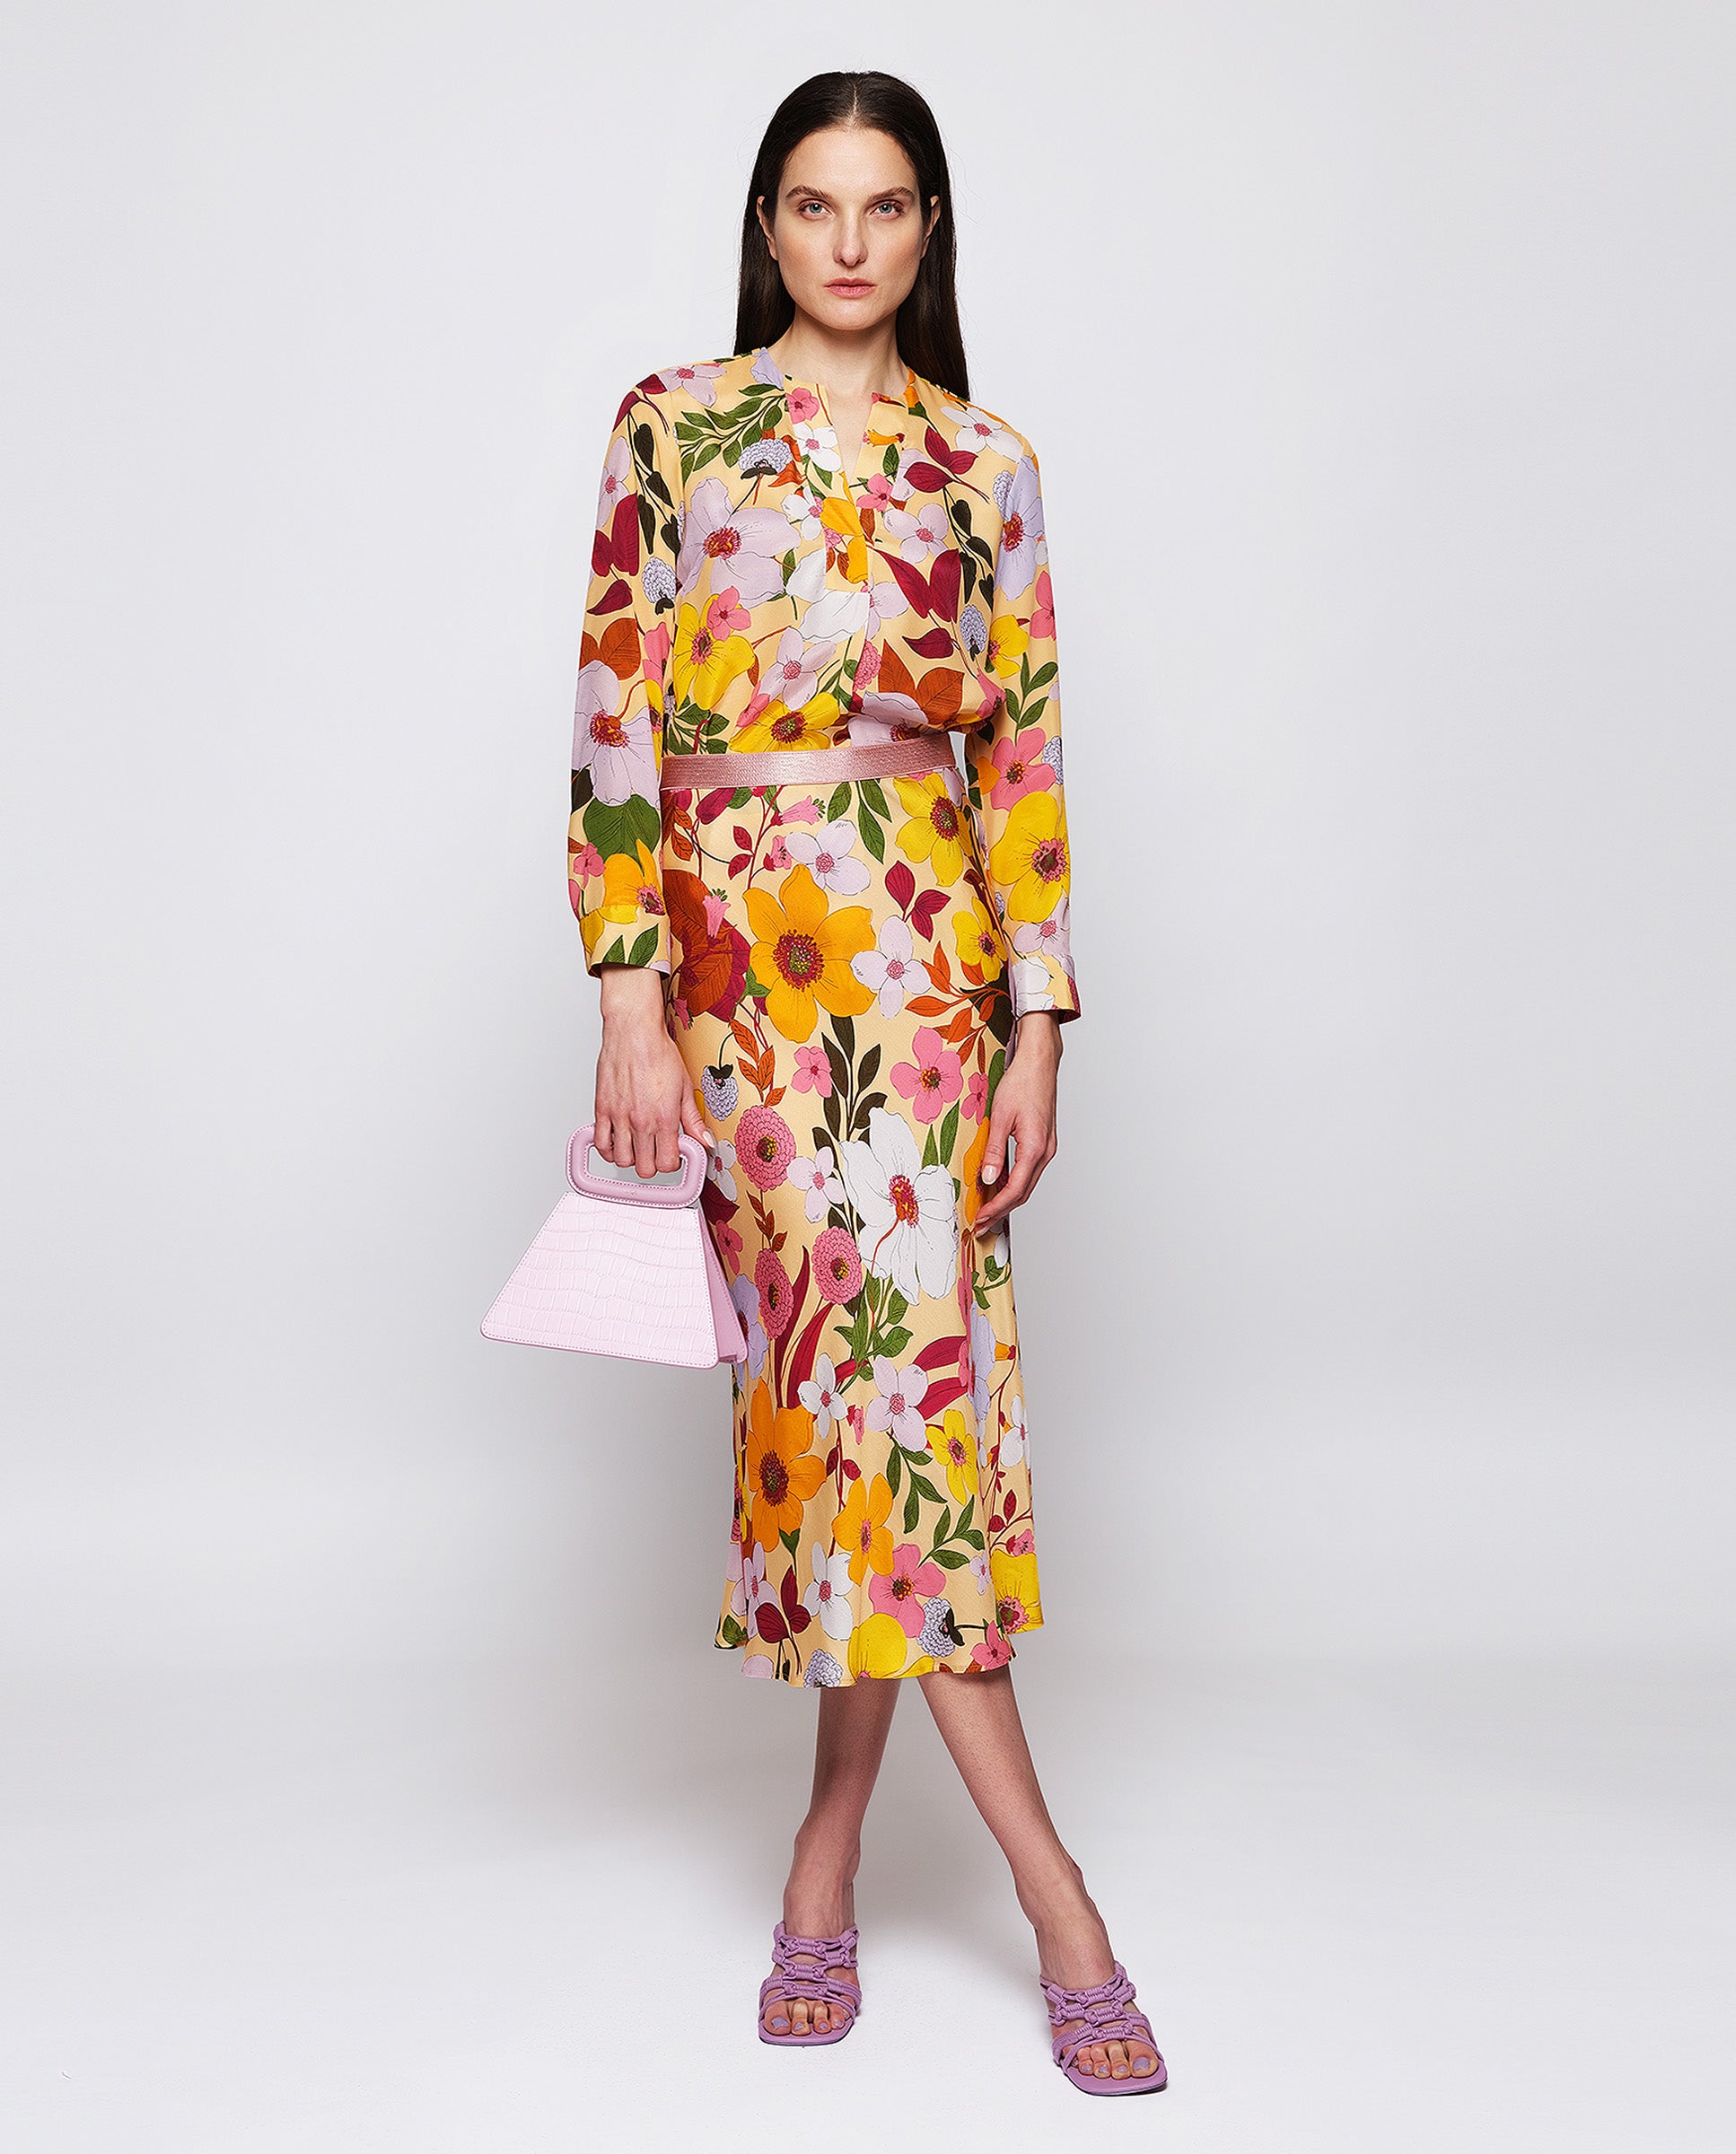 Falda midi estampado floral multicolor by MIRTO